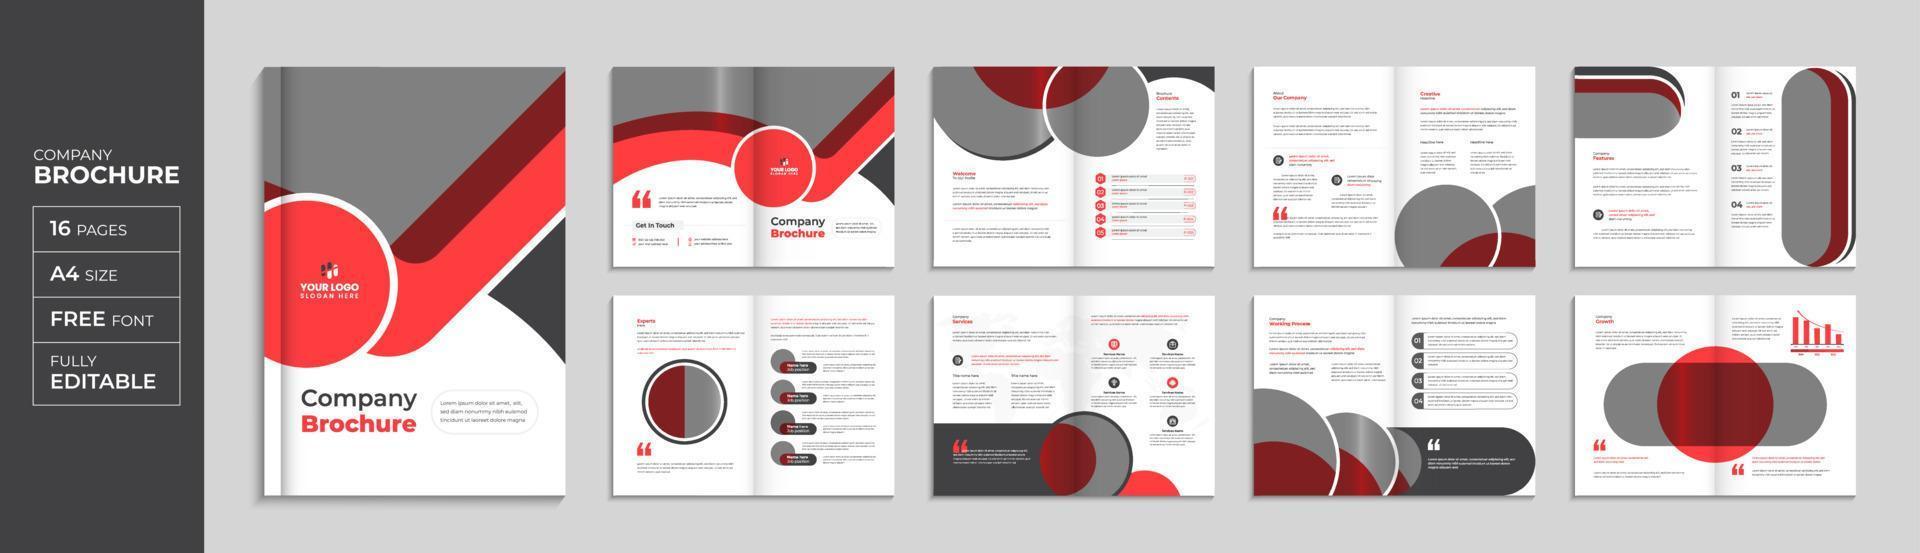 Folleto corporativo rojo de 16 páginas y plantilla de folleto, diseño de perfil de empresa moderno pro vector